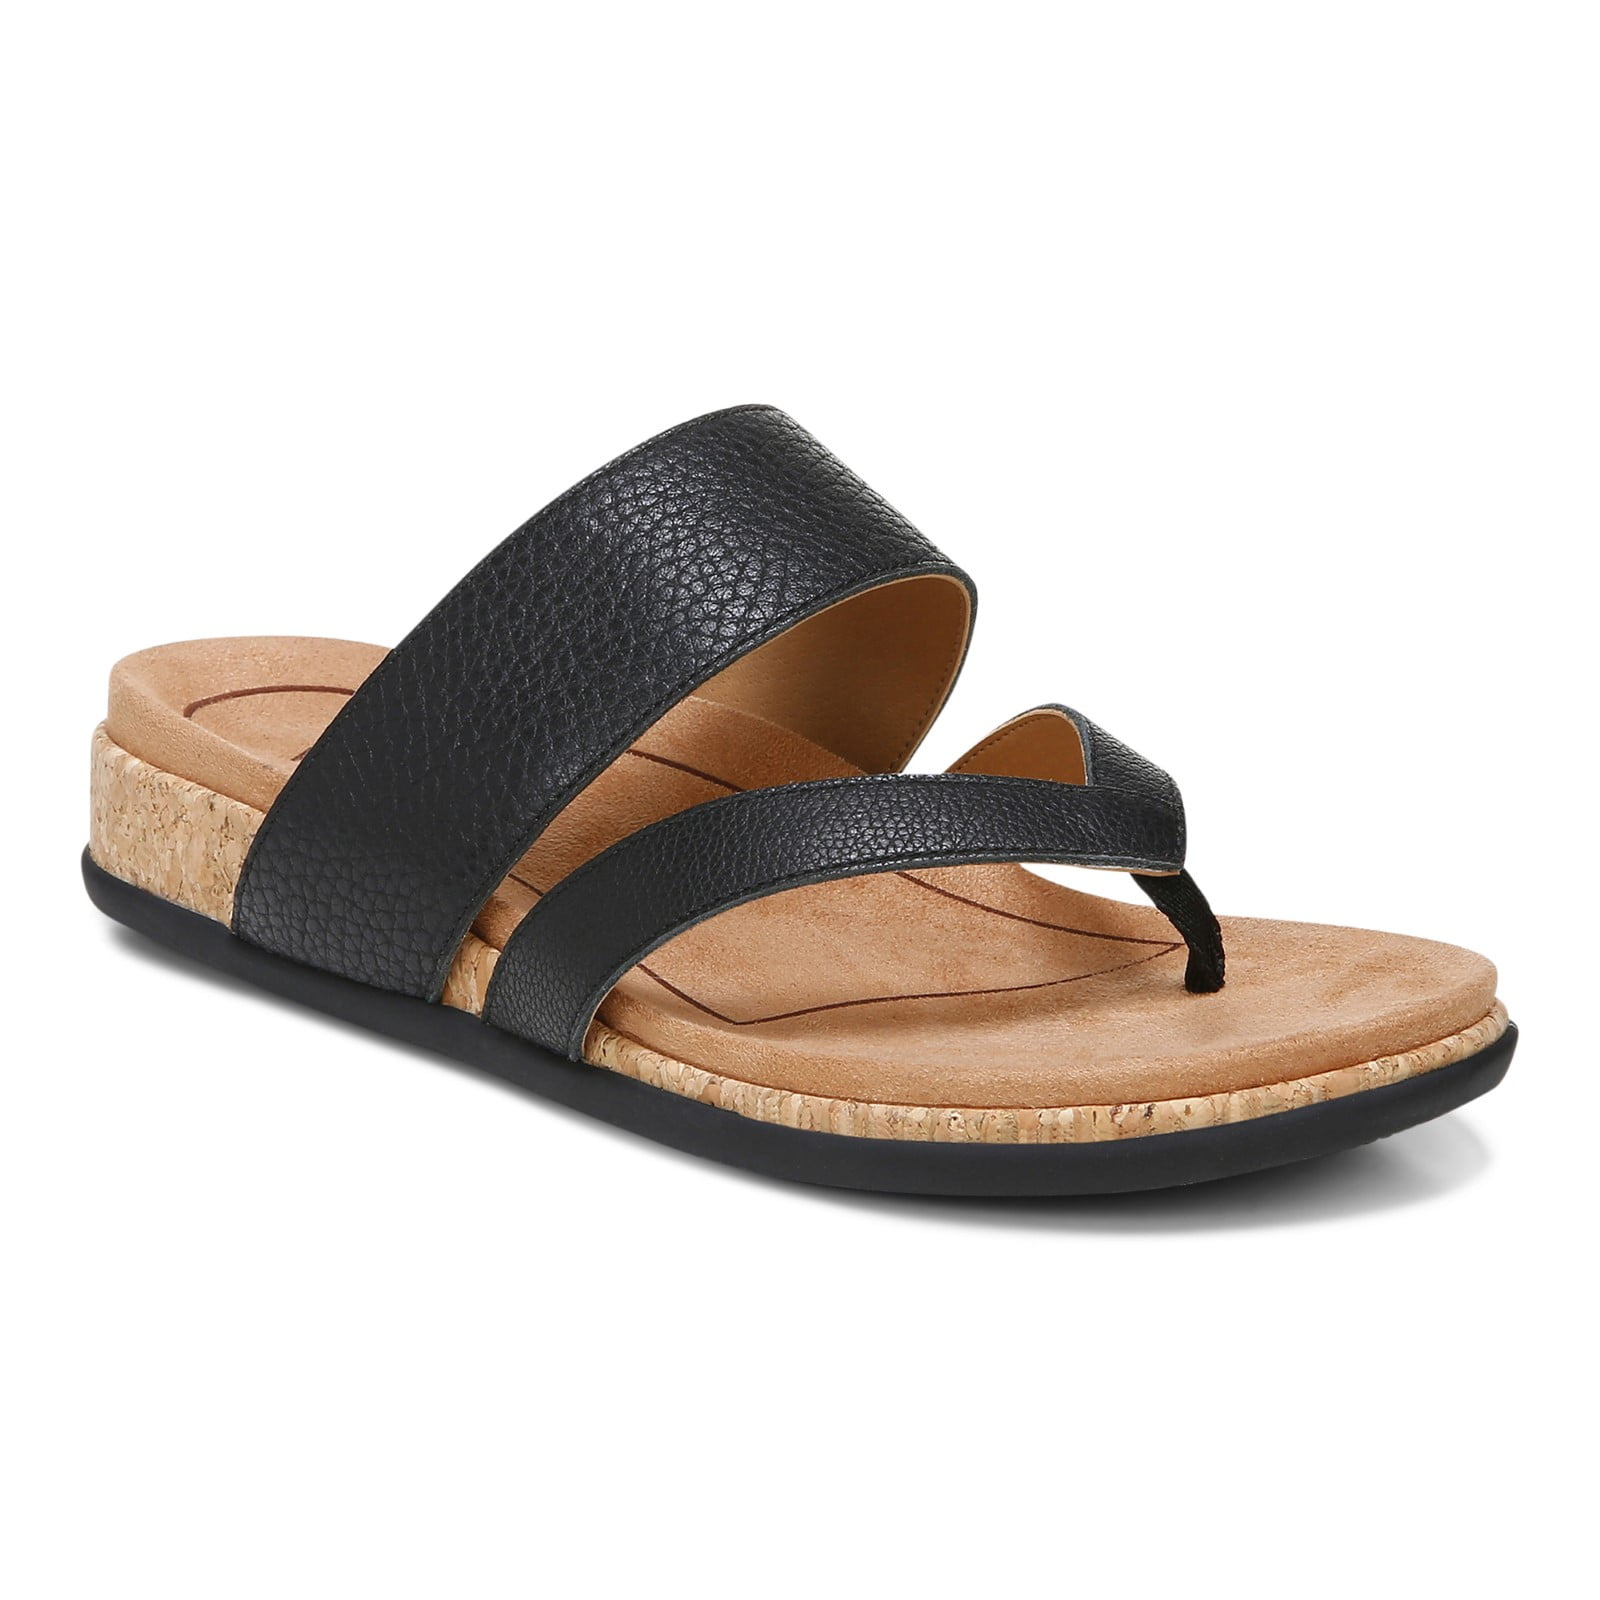 Vionic Marvina Women's Orthotic Toe-Post Sandals - Walmart.com